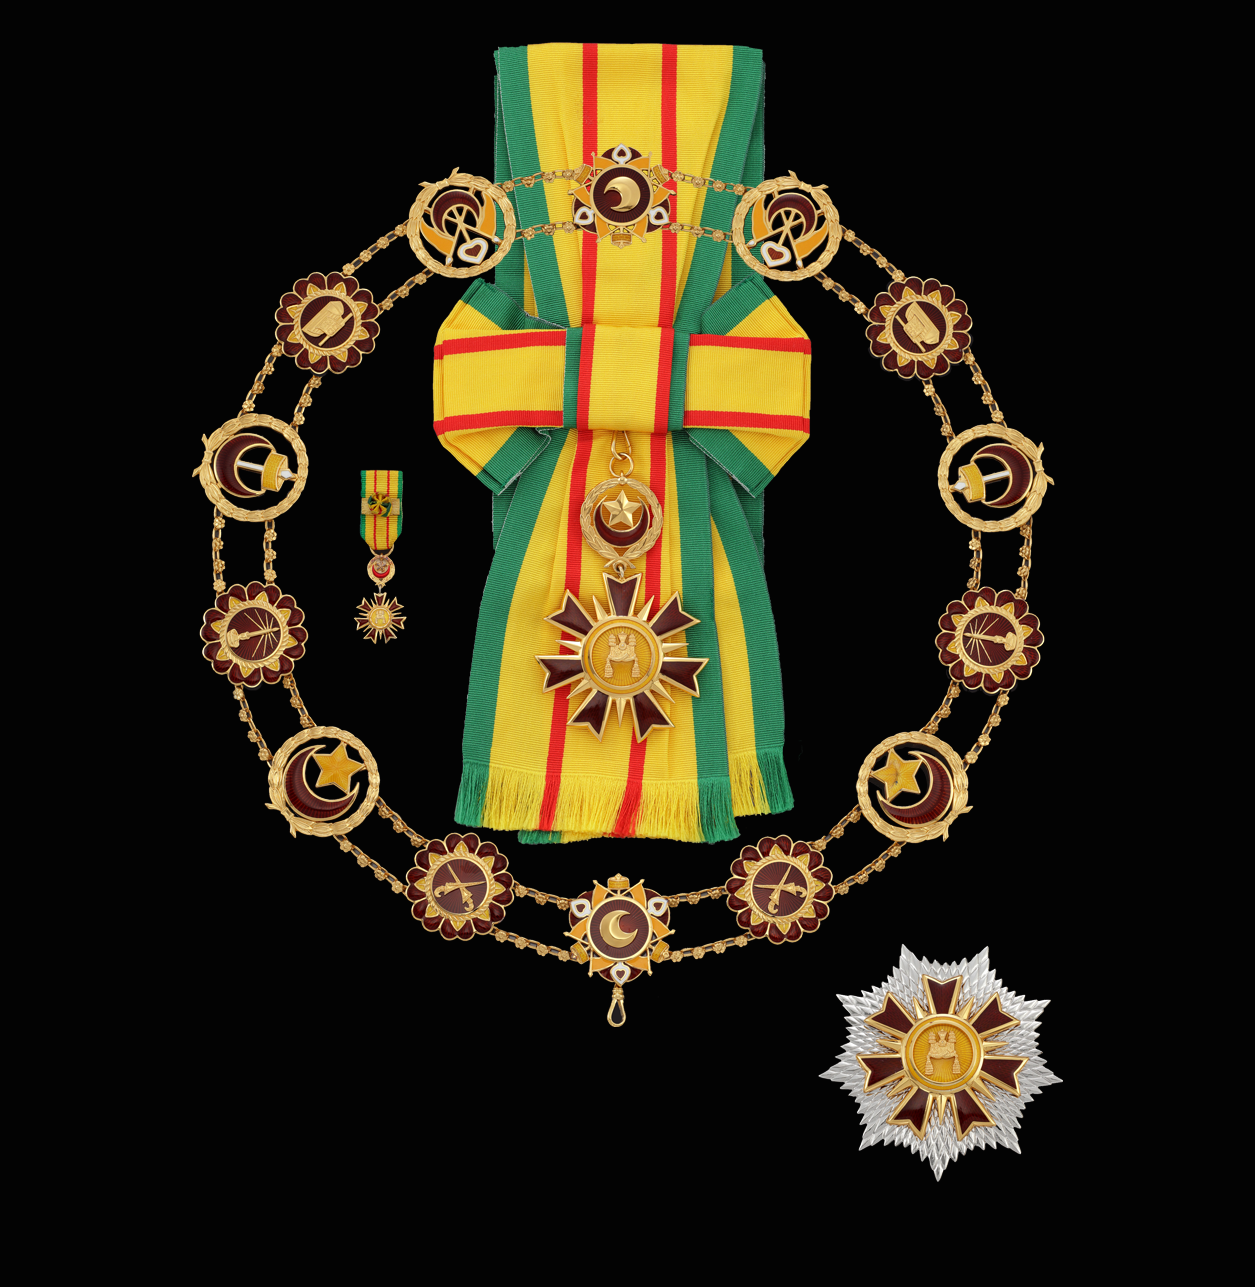 The Most Blessed Order of Setia Negara Brunei